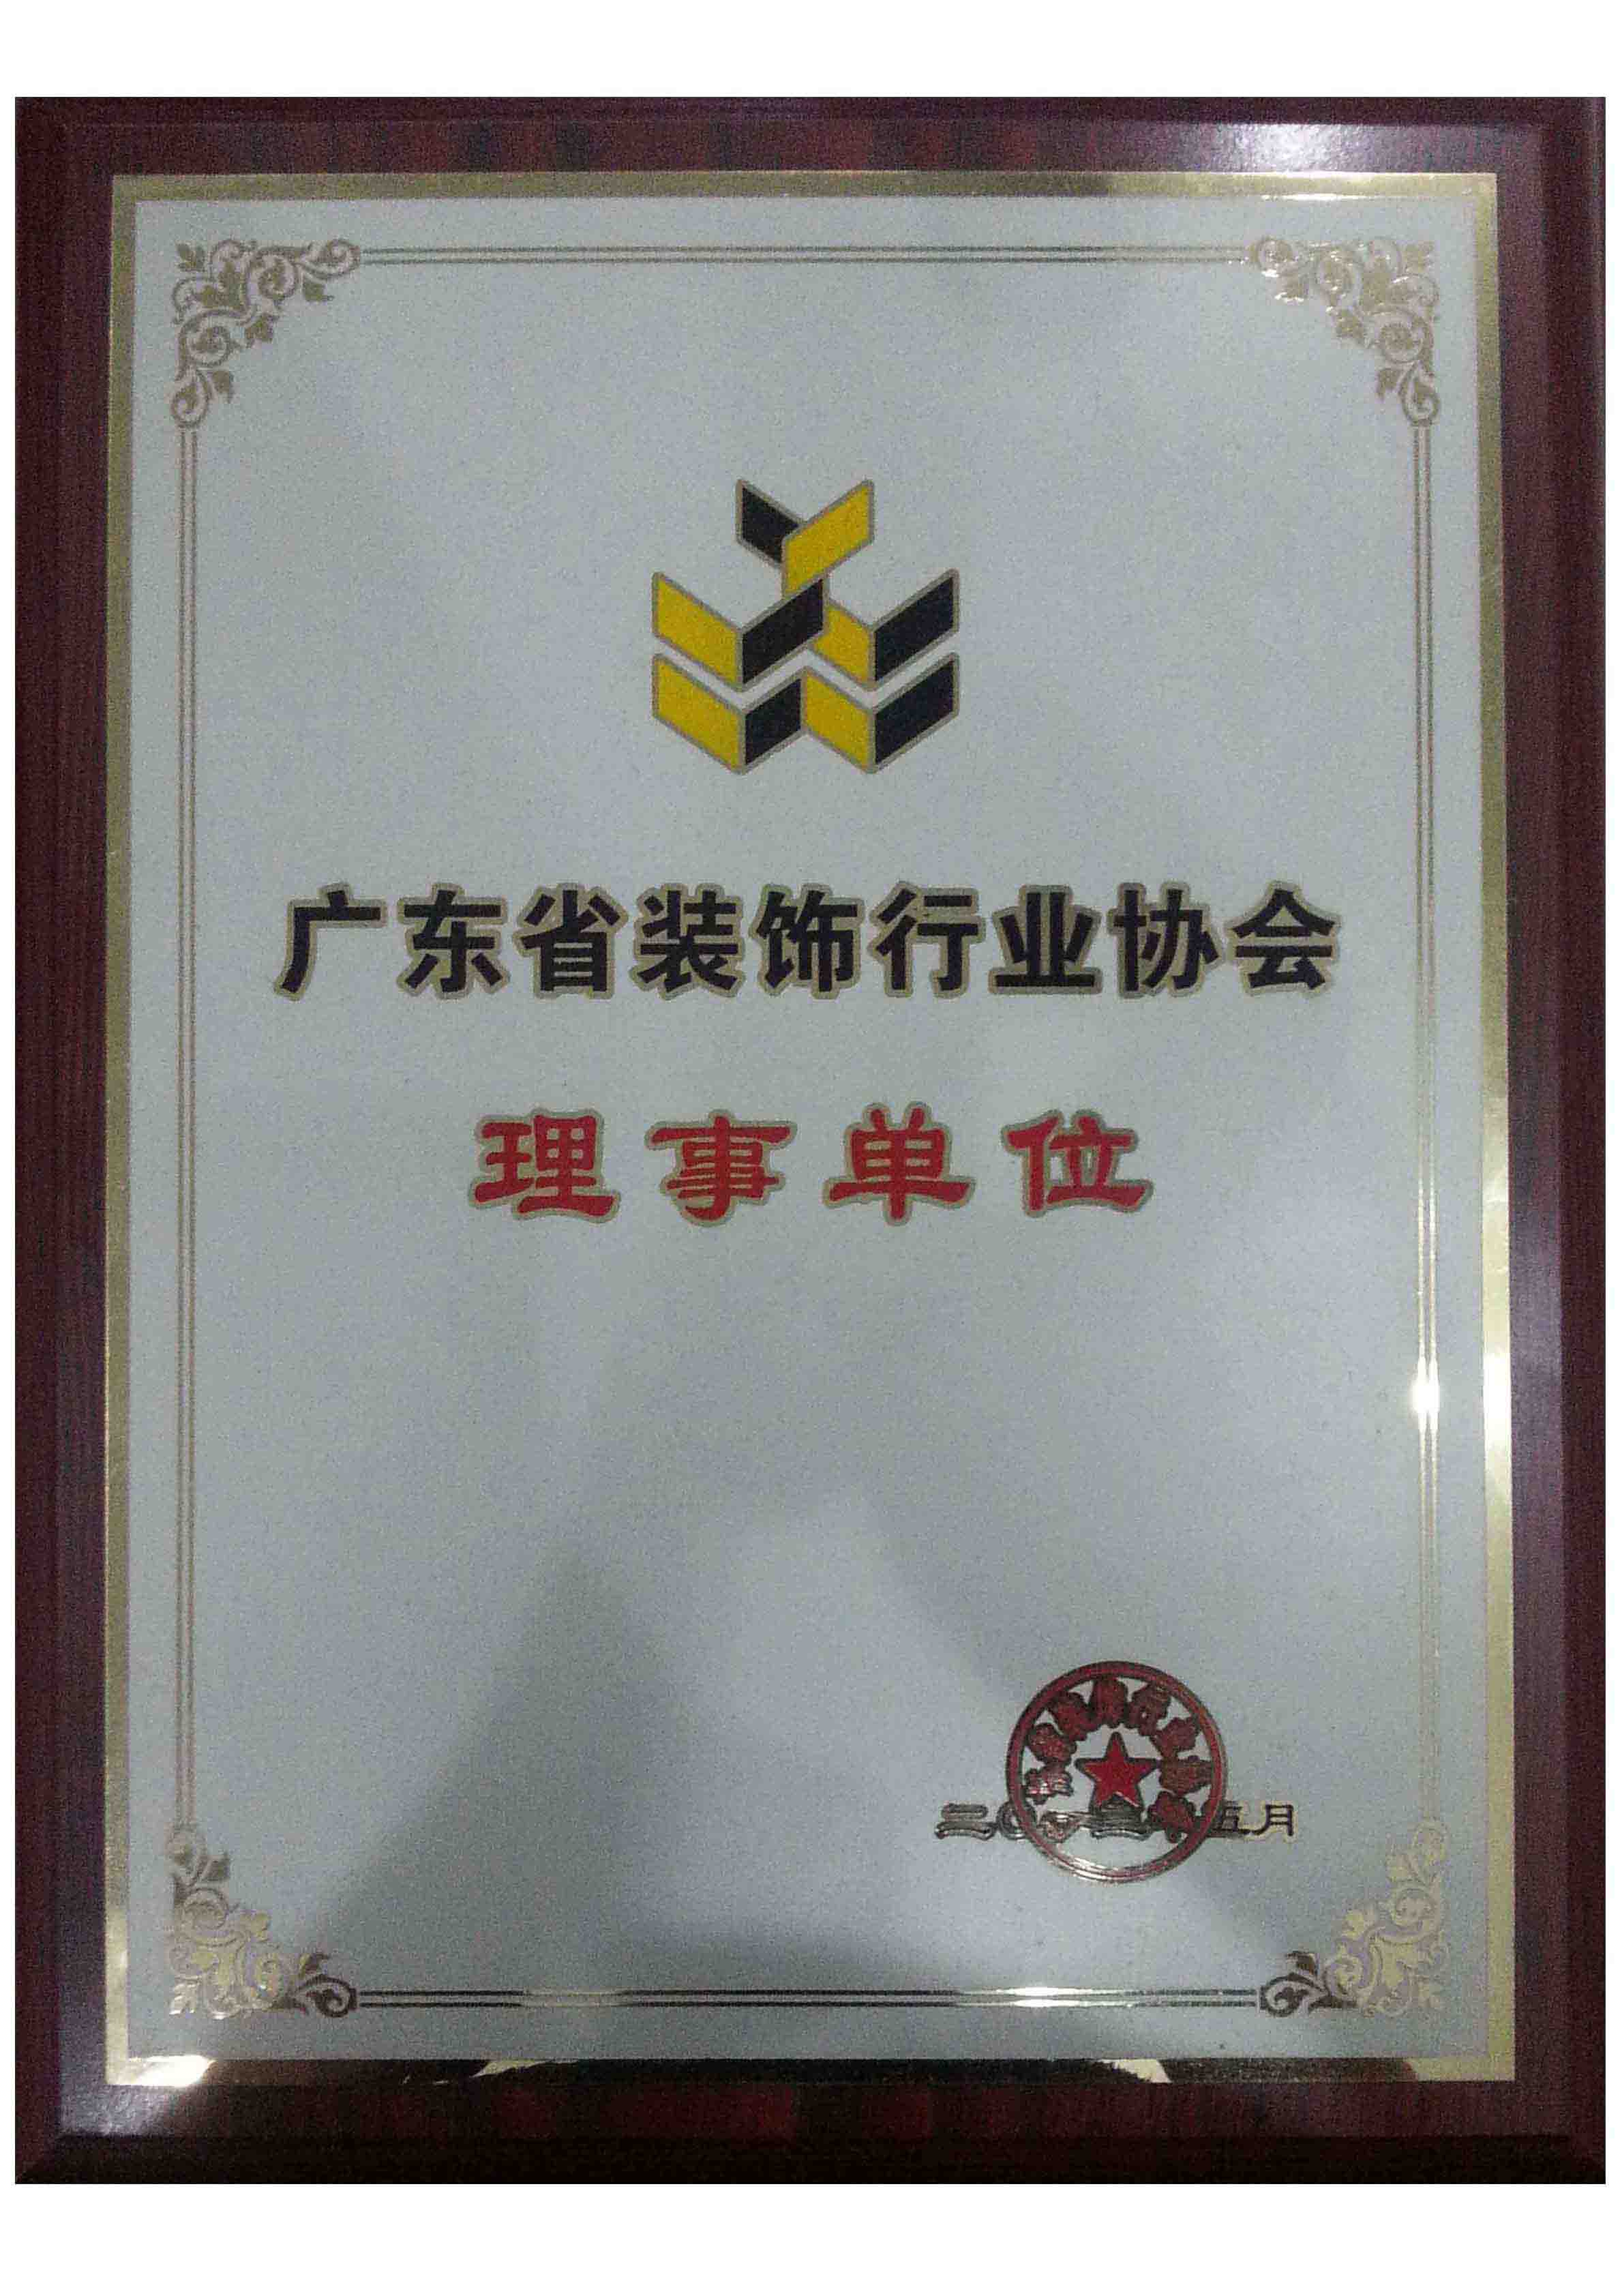 广东省装饰行业协会会员单位